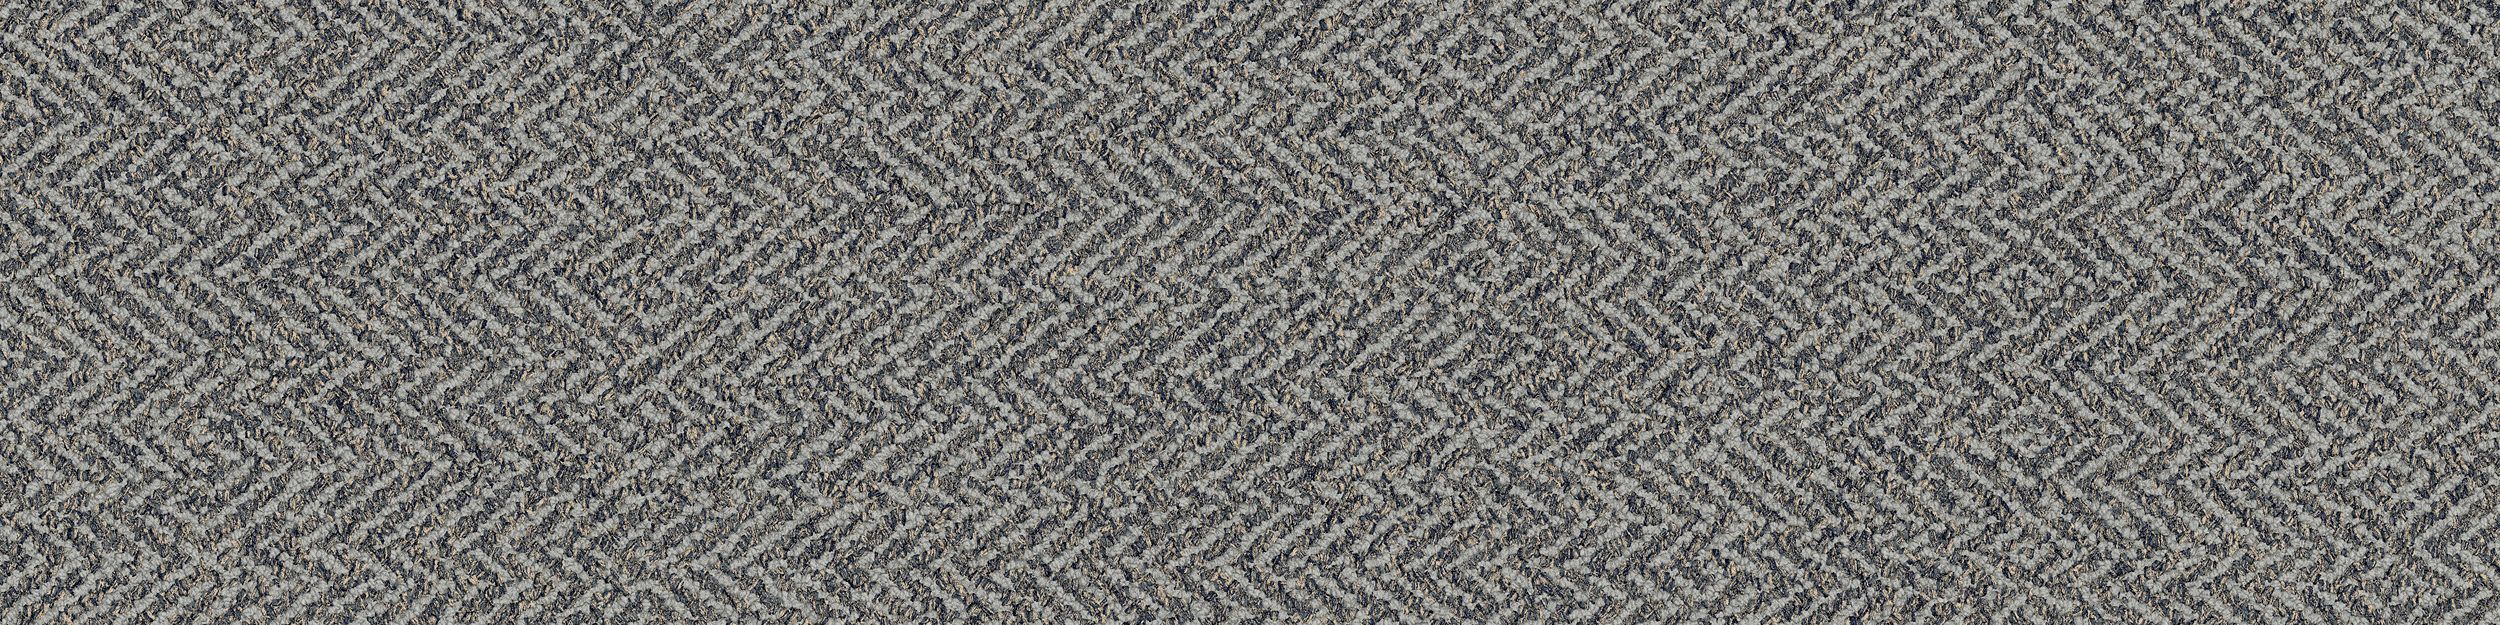 Third Space 308 Carpet Tile in Mist imagen número 2